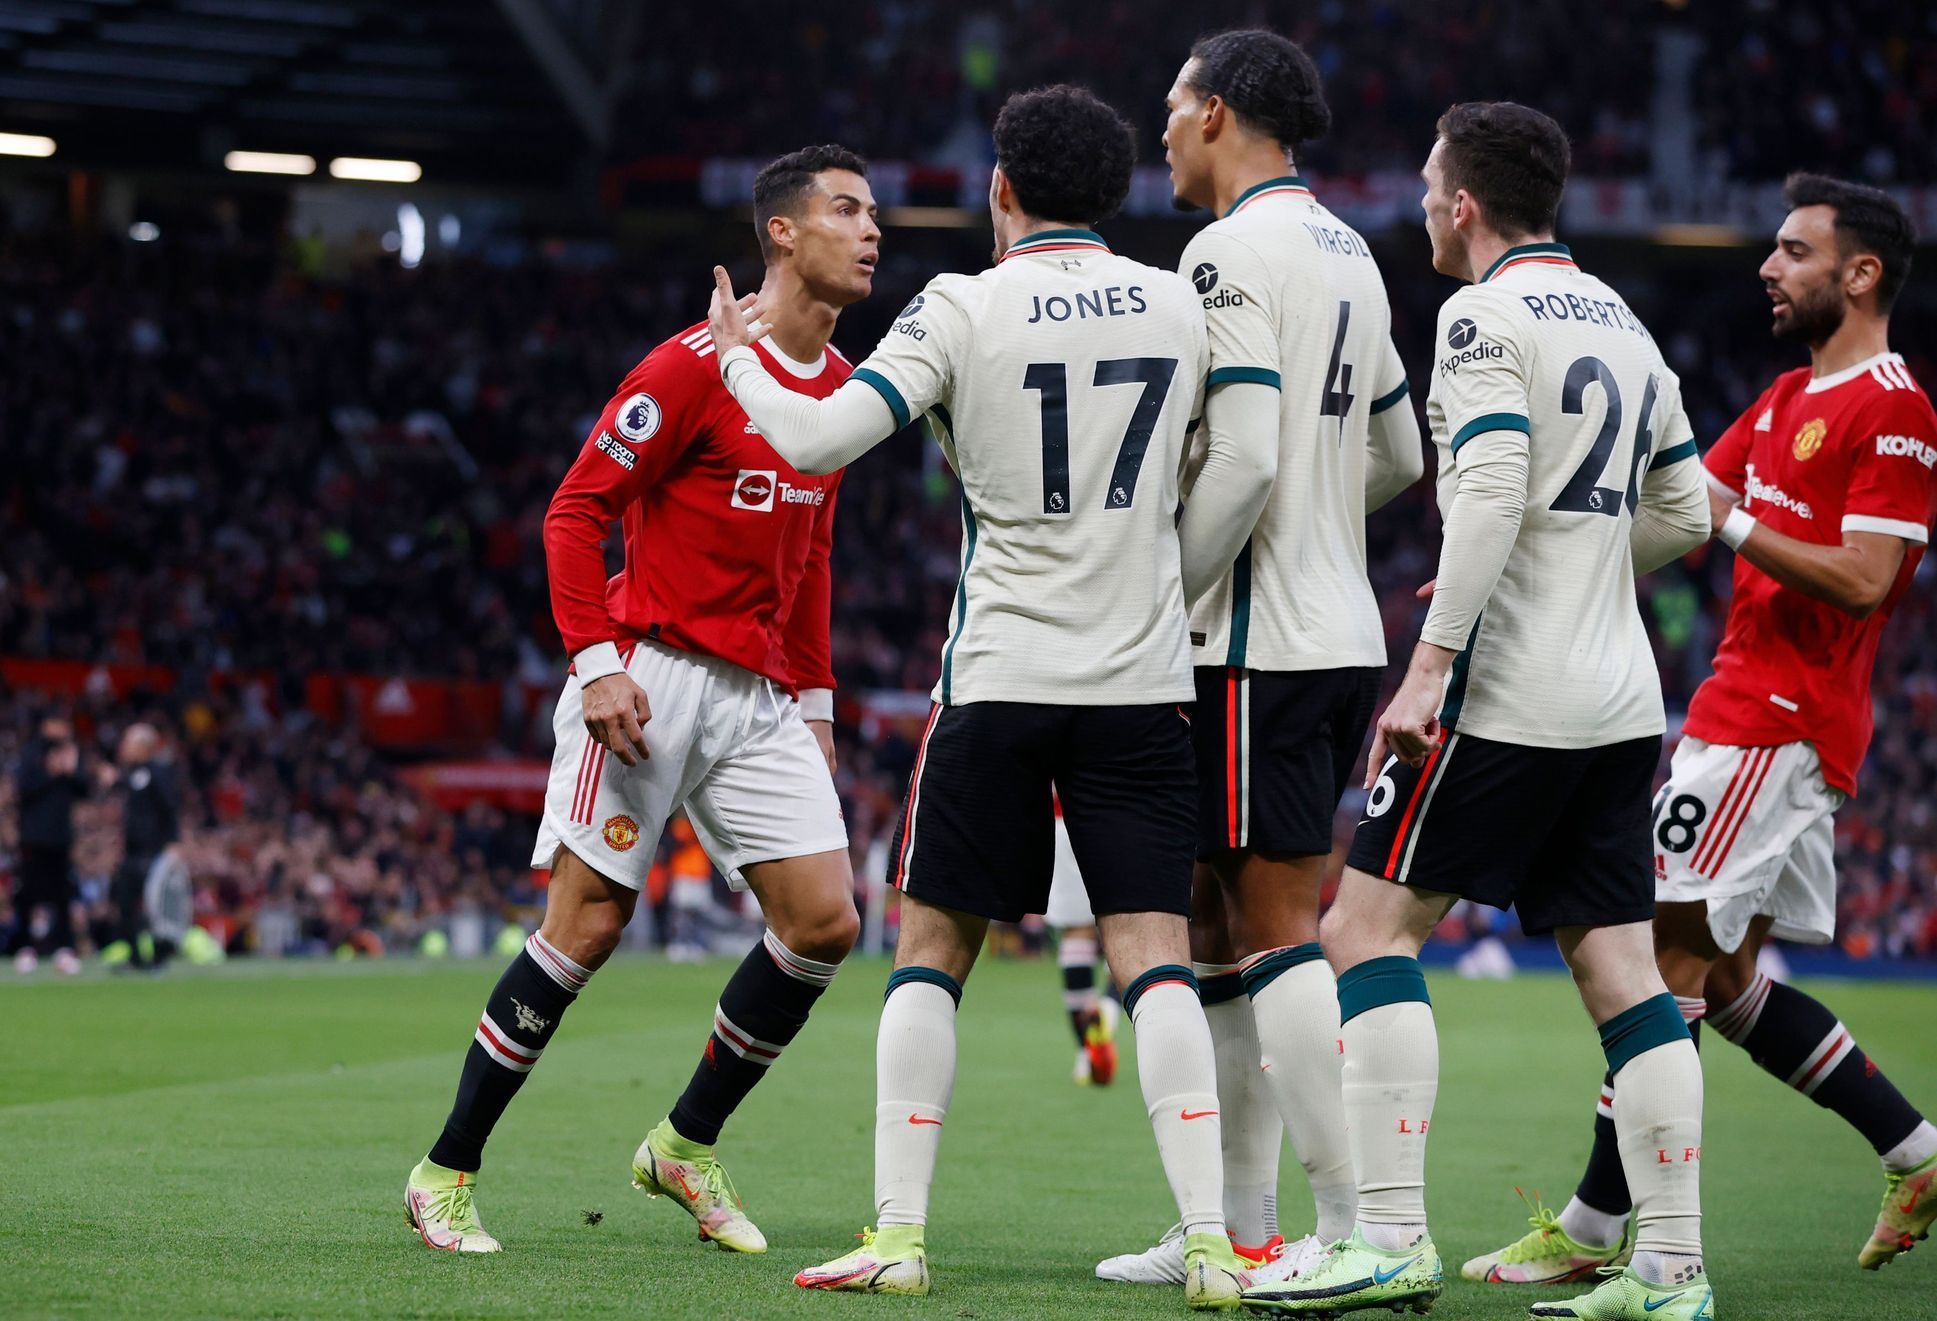 Manchester United - Liverpool 0:5 (Cristiano Ronaldo)